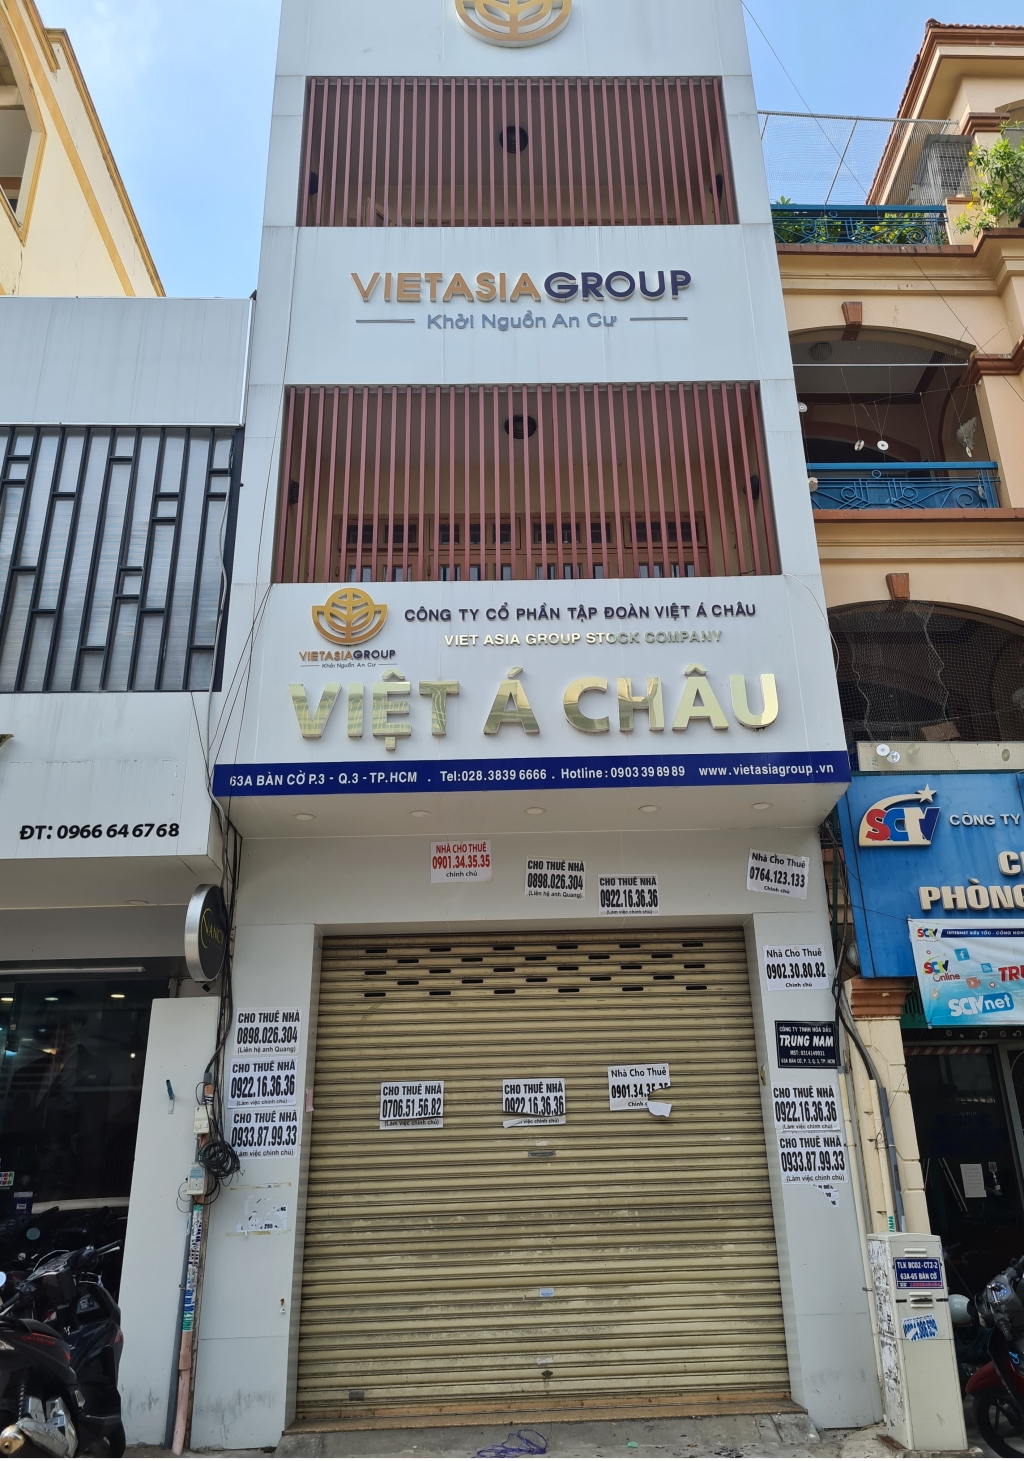 Địa chỉ Công ty Việt Á Châu luôn trong tình trạng đóng cửa